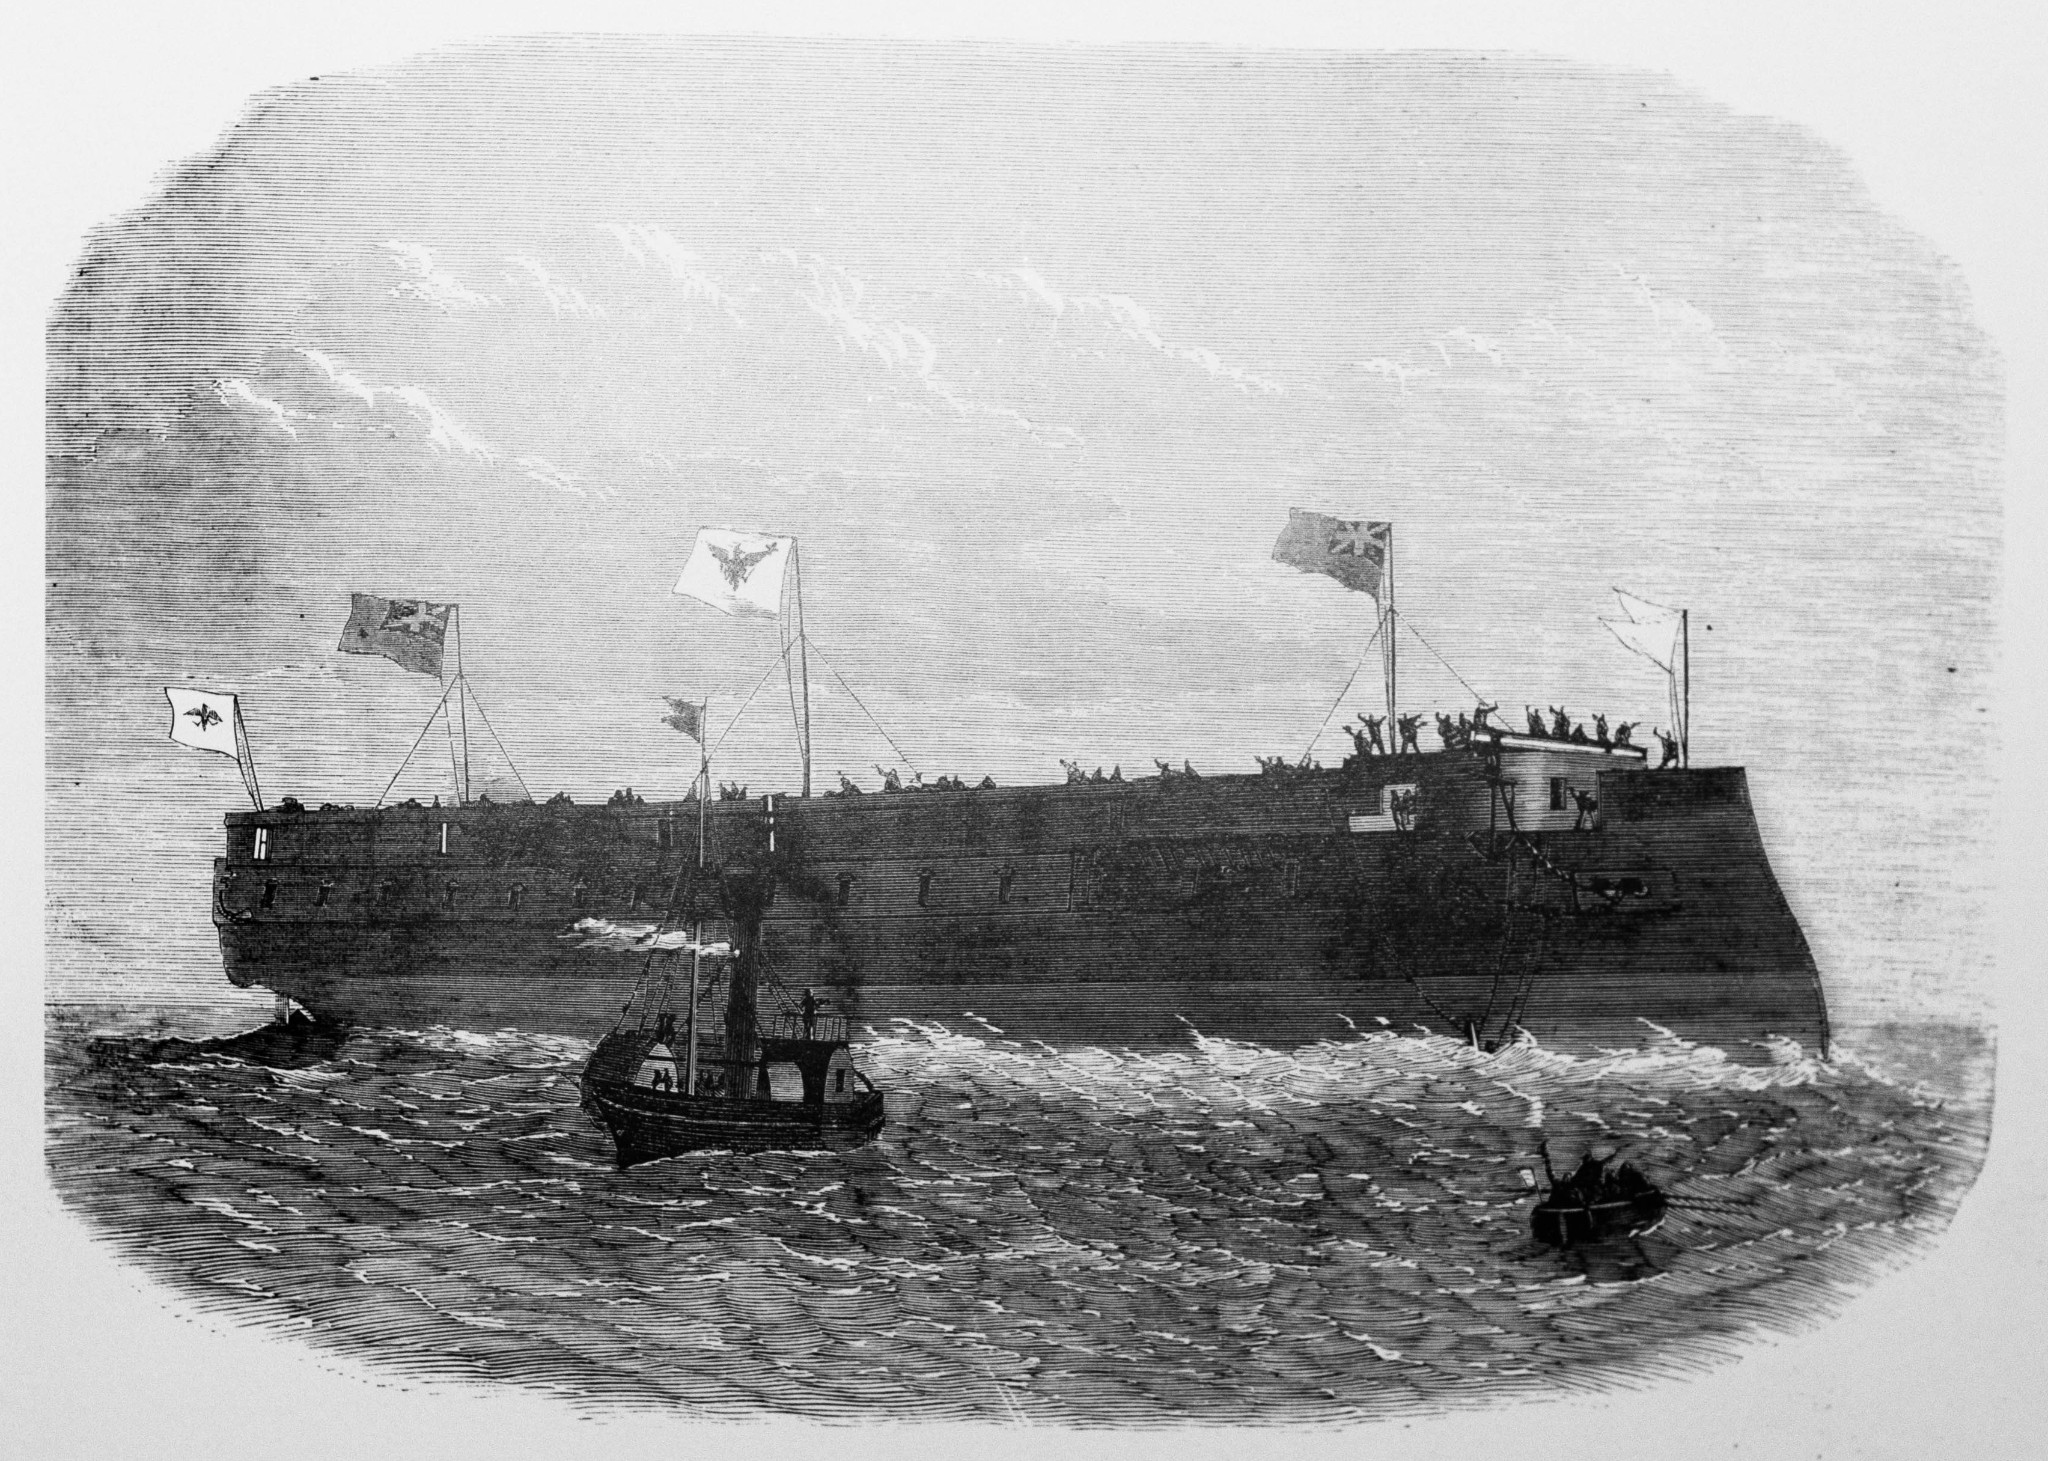 Panzerfregatte_Kronprinz_nach_Stapellauf_auf_der_Themse_-_aus_Illustrirte_Zeitung_Juni_1867.jpg